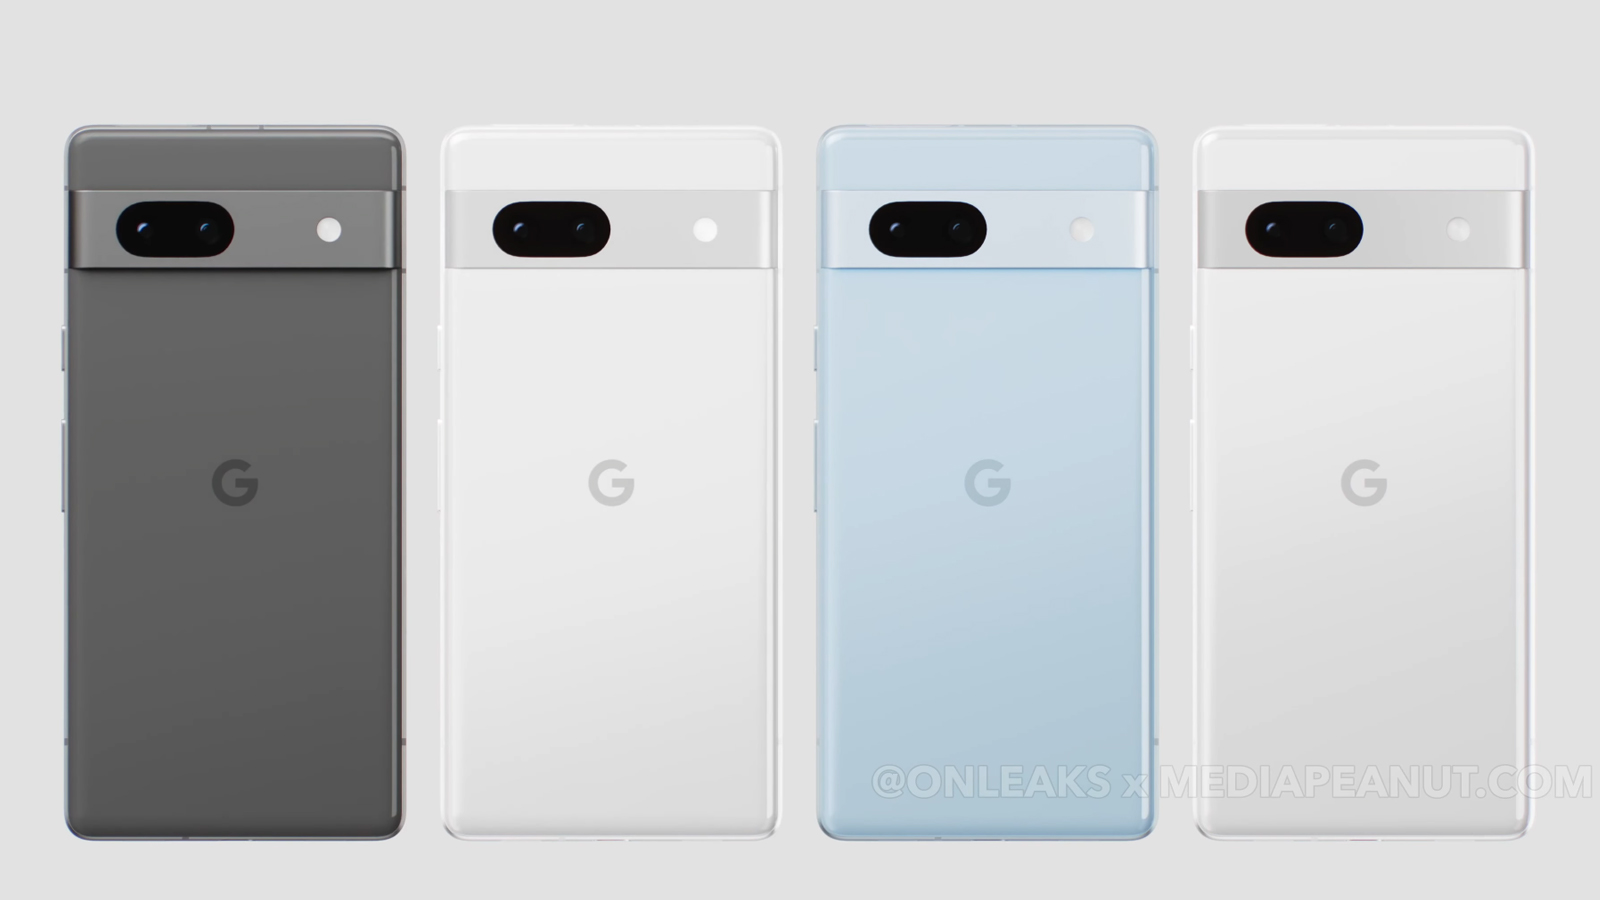 Google Pixel : 40 millions de téléphones vendus depuis 2016, 10 millions rien que l'année dernière